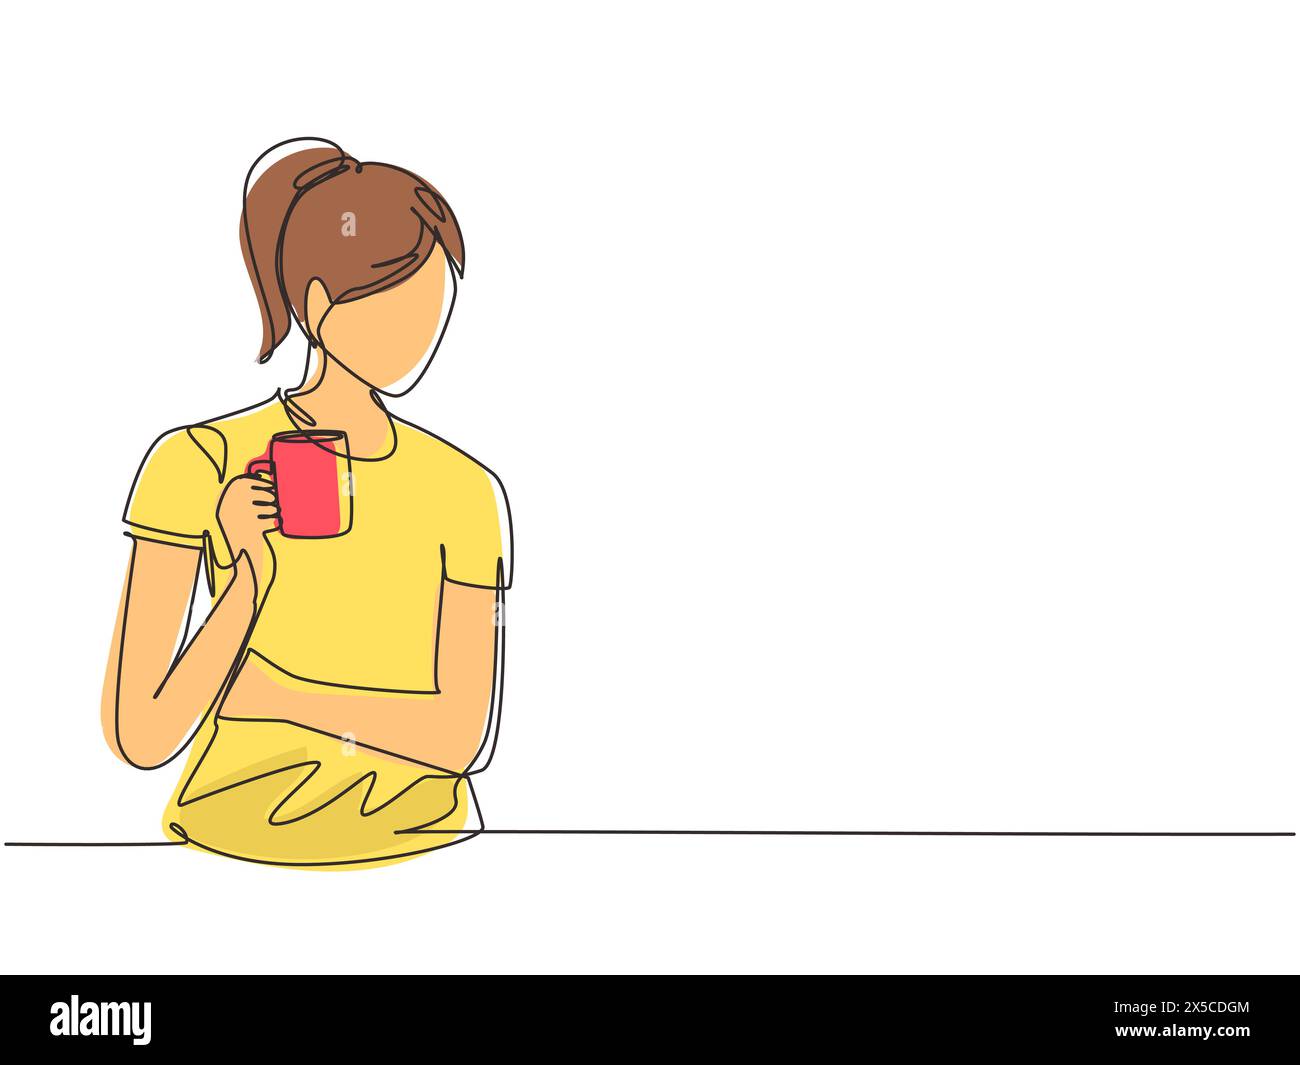 Linea singola continua che disegna una bella donna che si rilassa bevendo e guarda una tazza di caffè o tè caldo. Una ragazza carina si sente felice di fare colazione Illustrazione Vettoriale